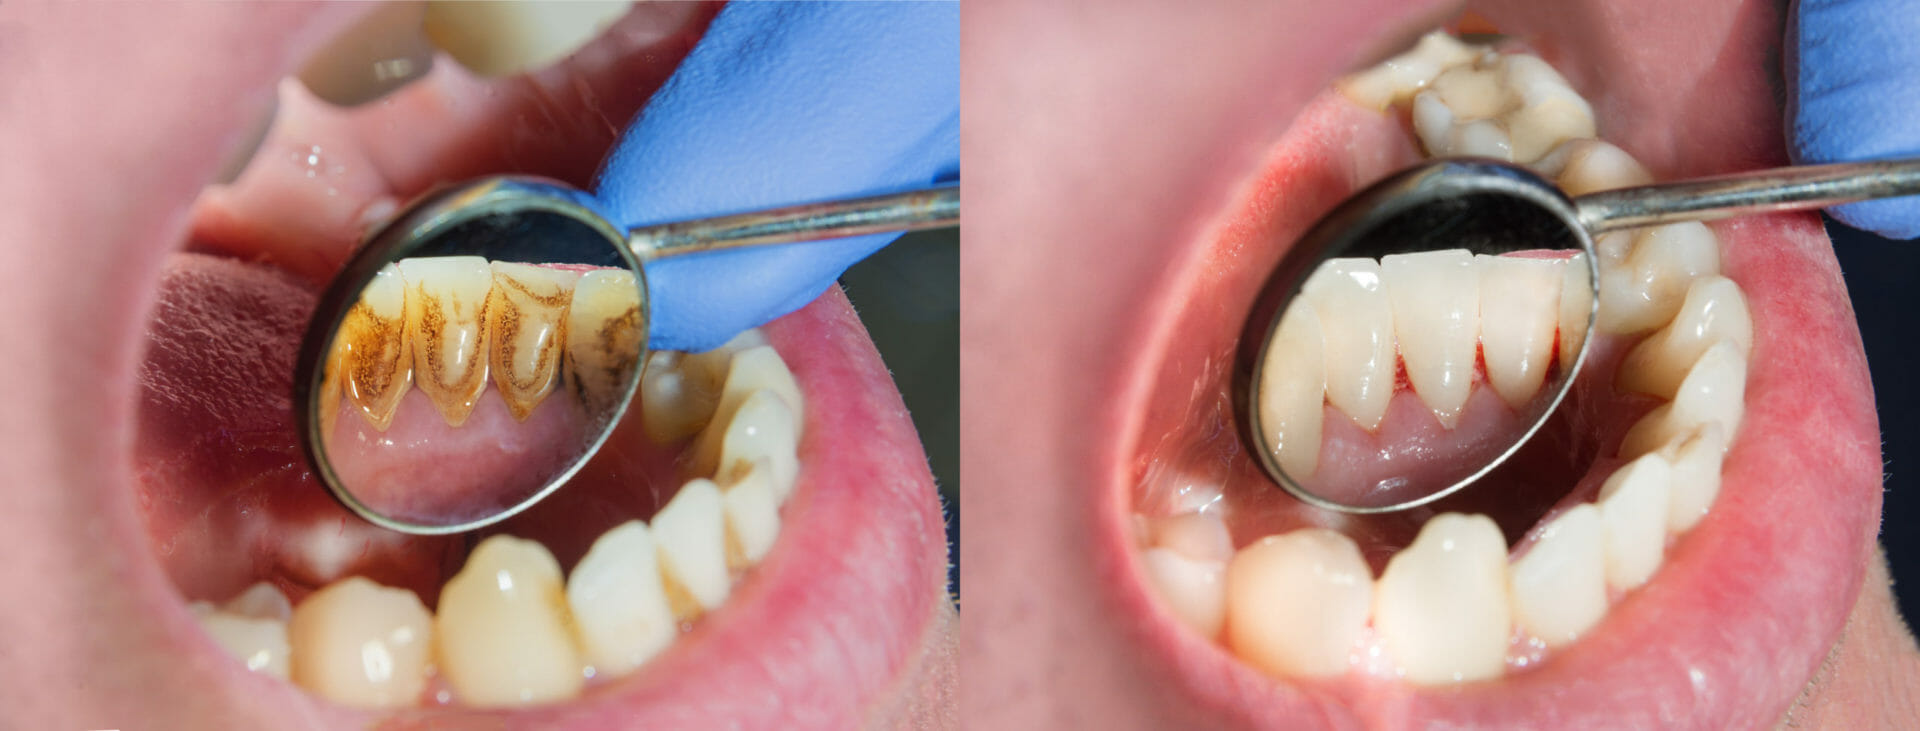 periodontal hygiene - FMS Dental in Houston